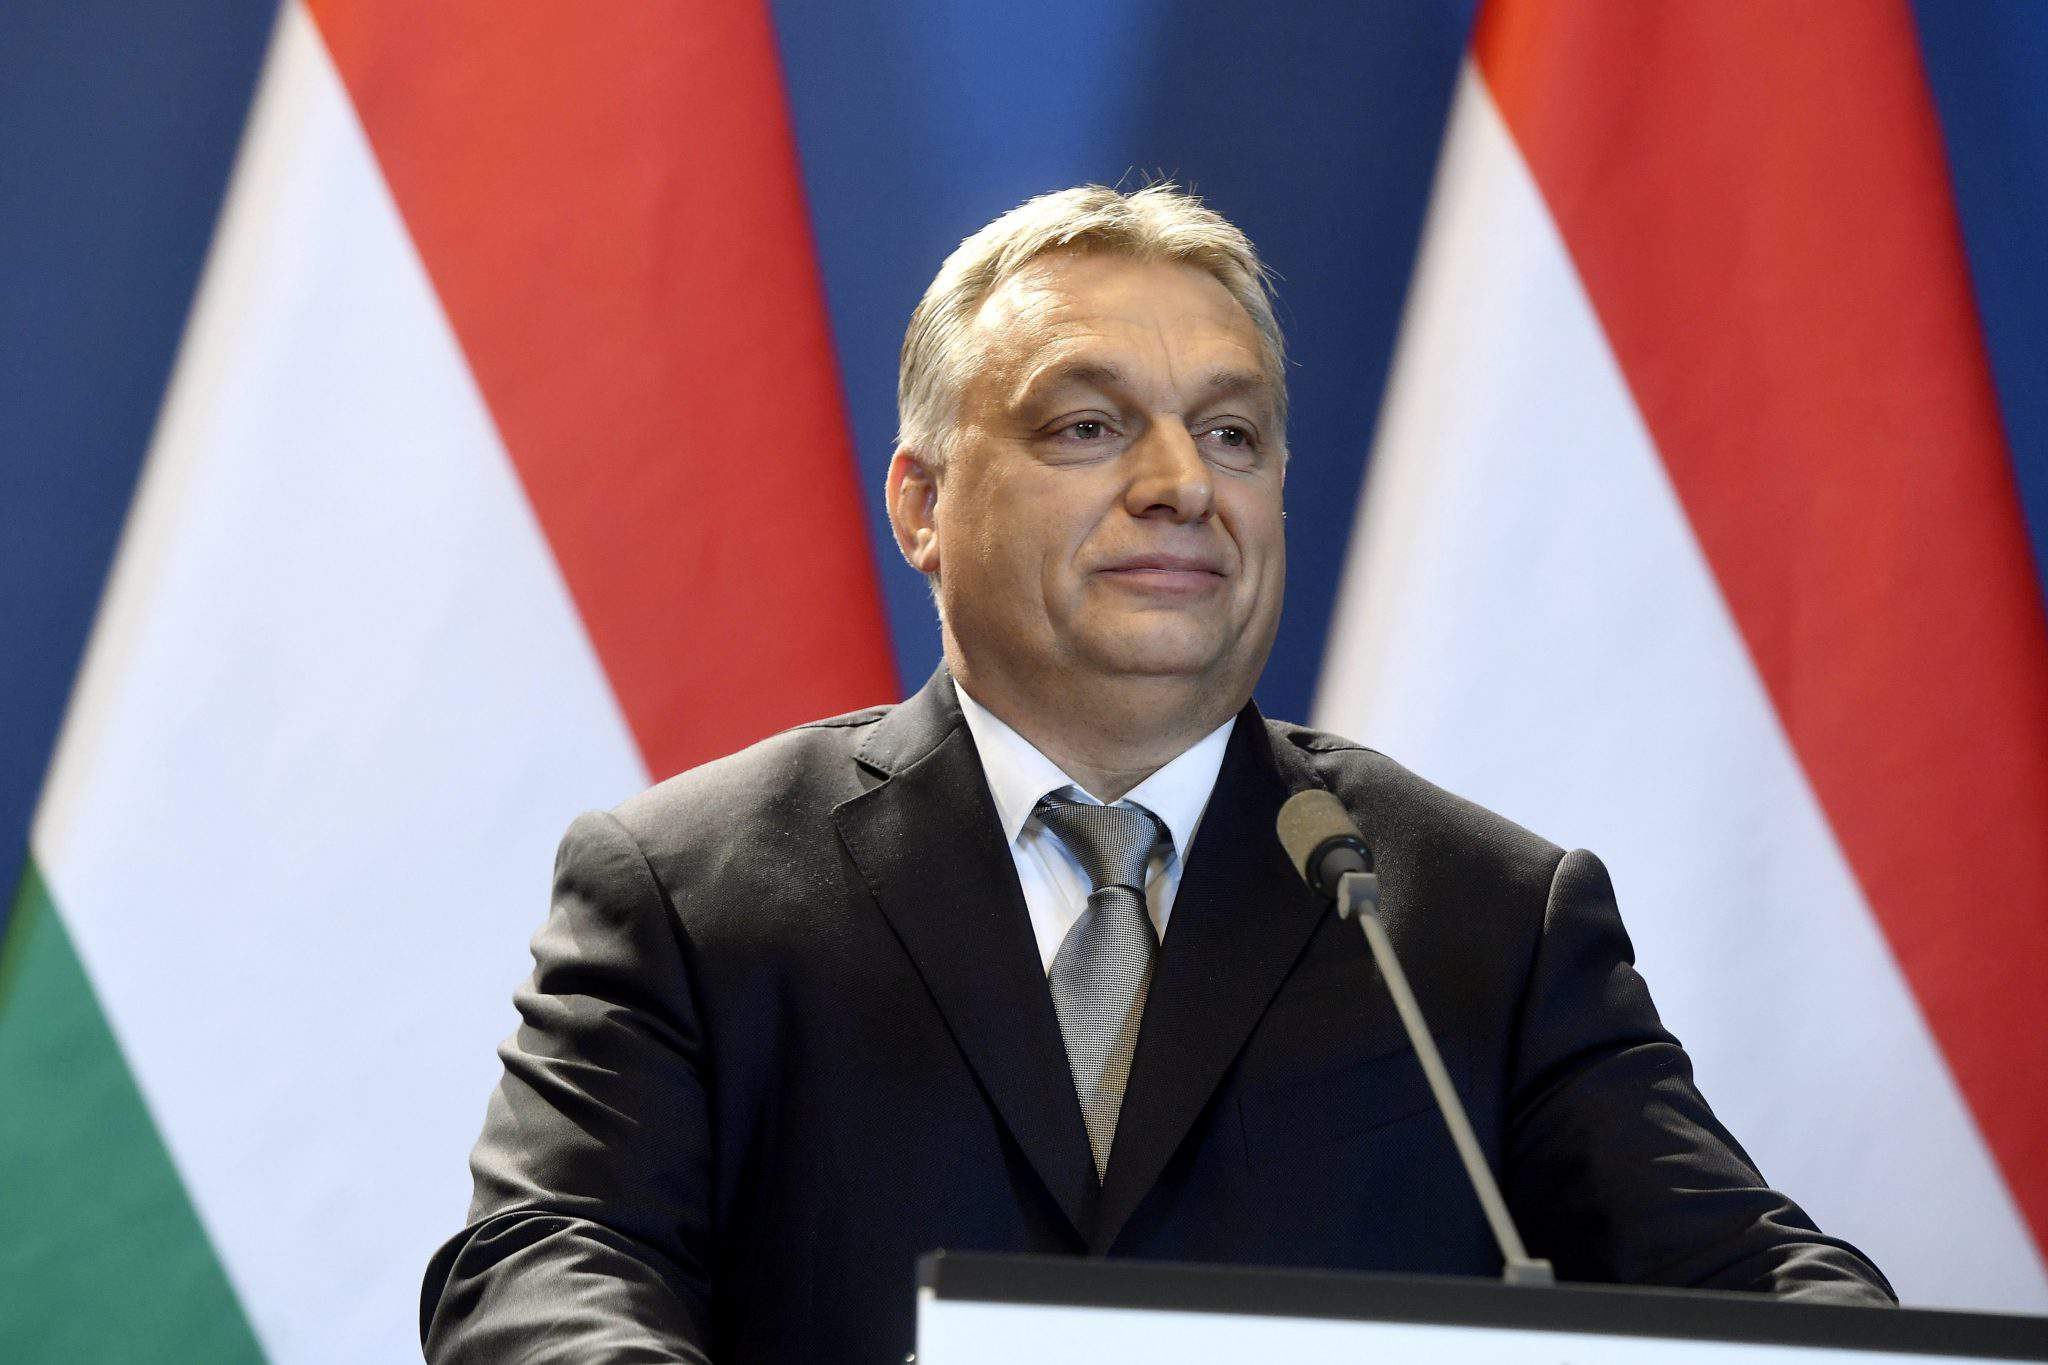 青民盟的勝利可能威脅到匈牙利的民主